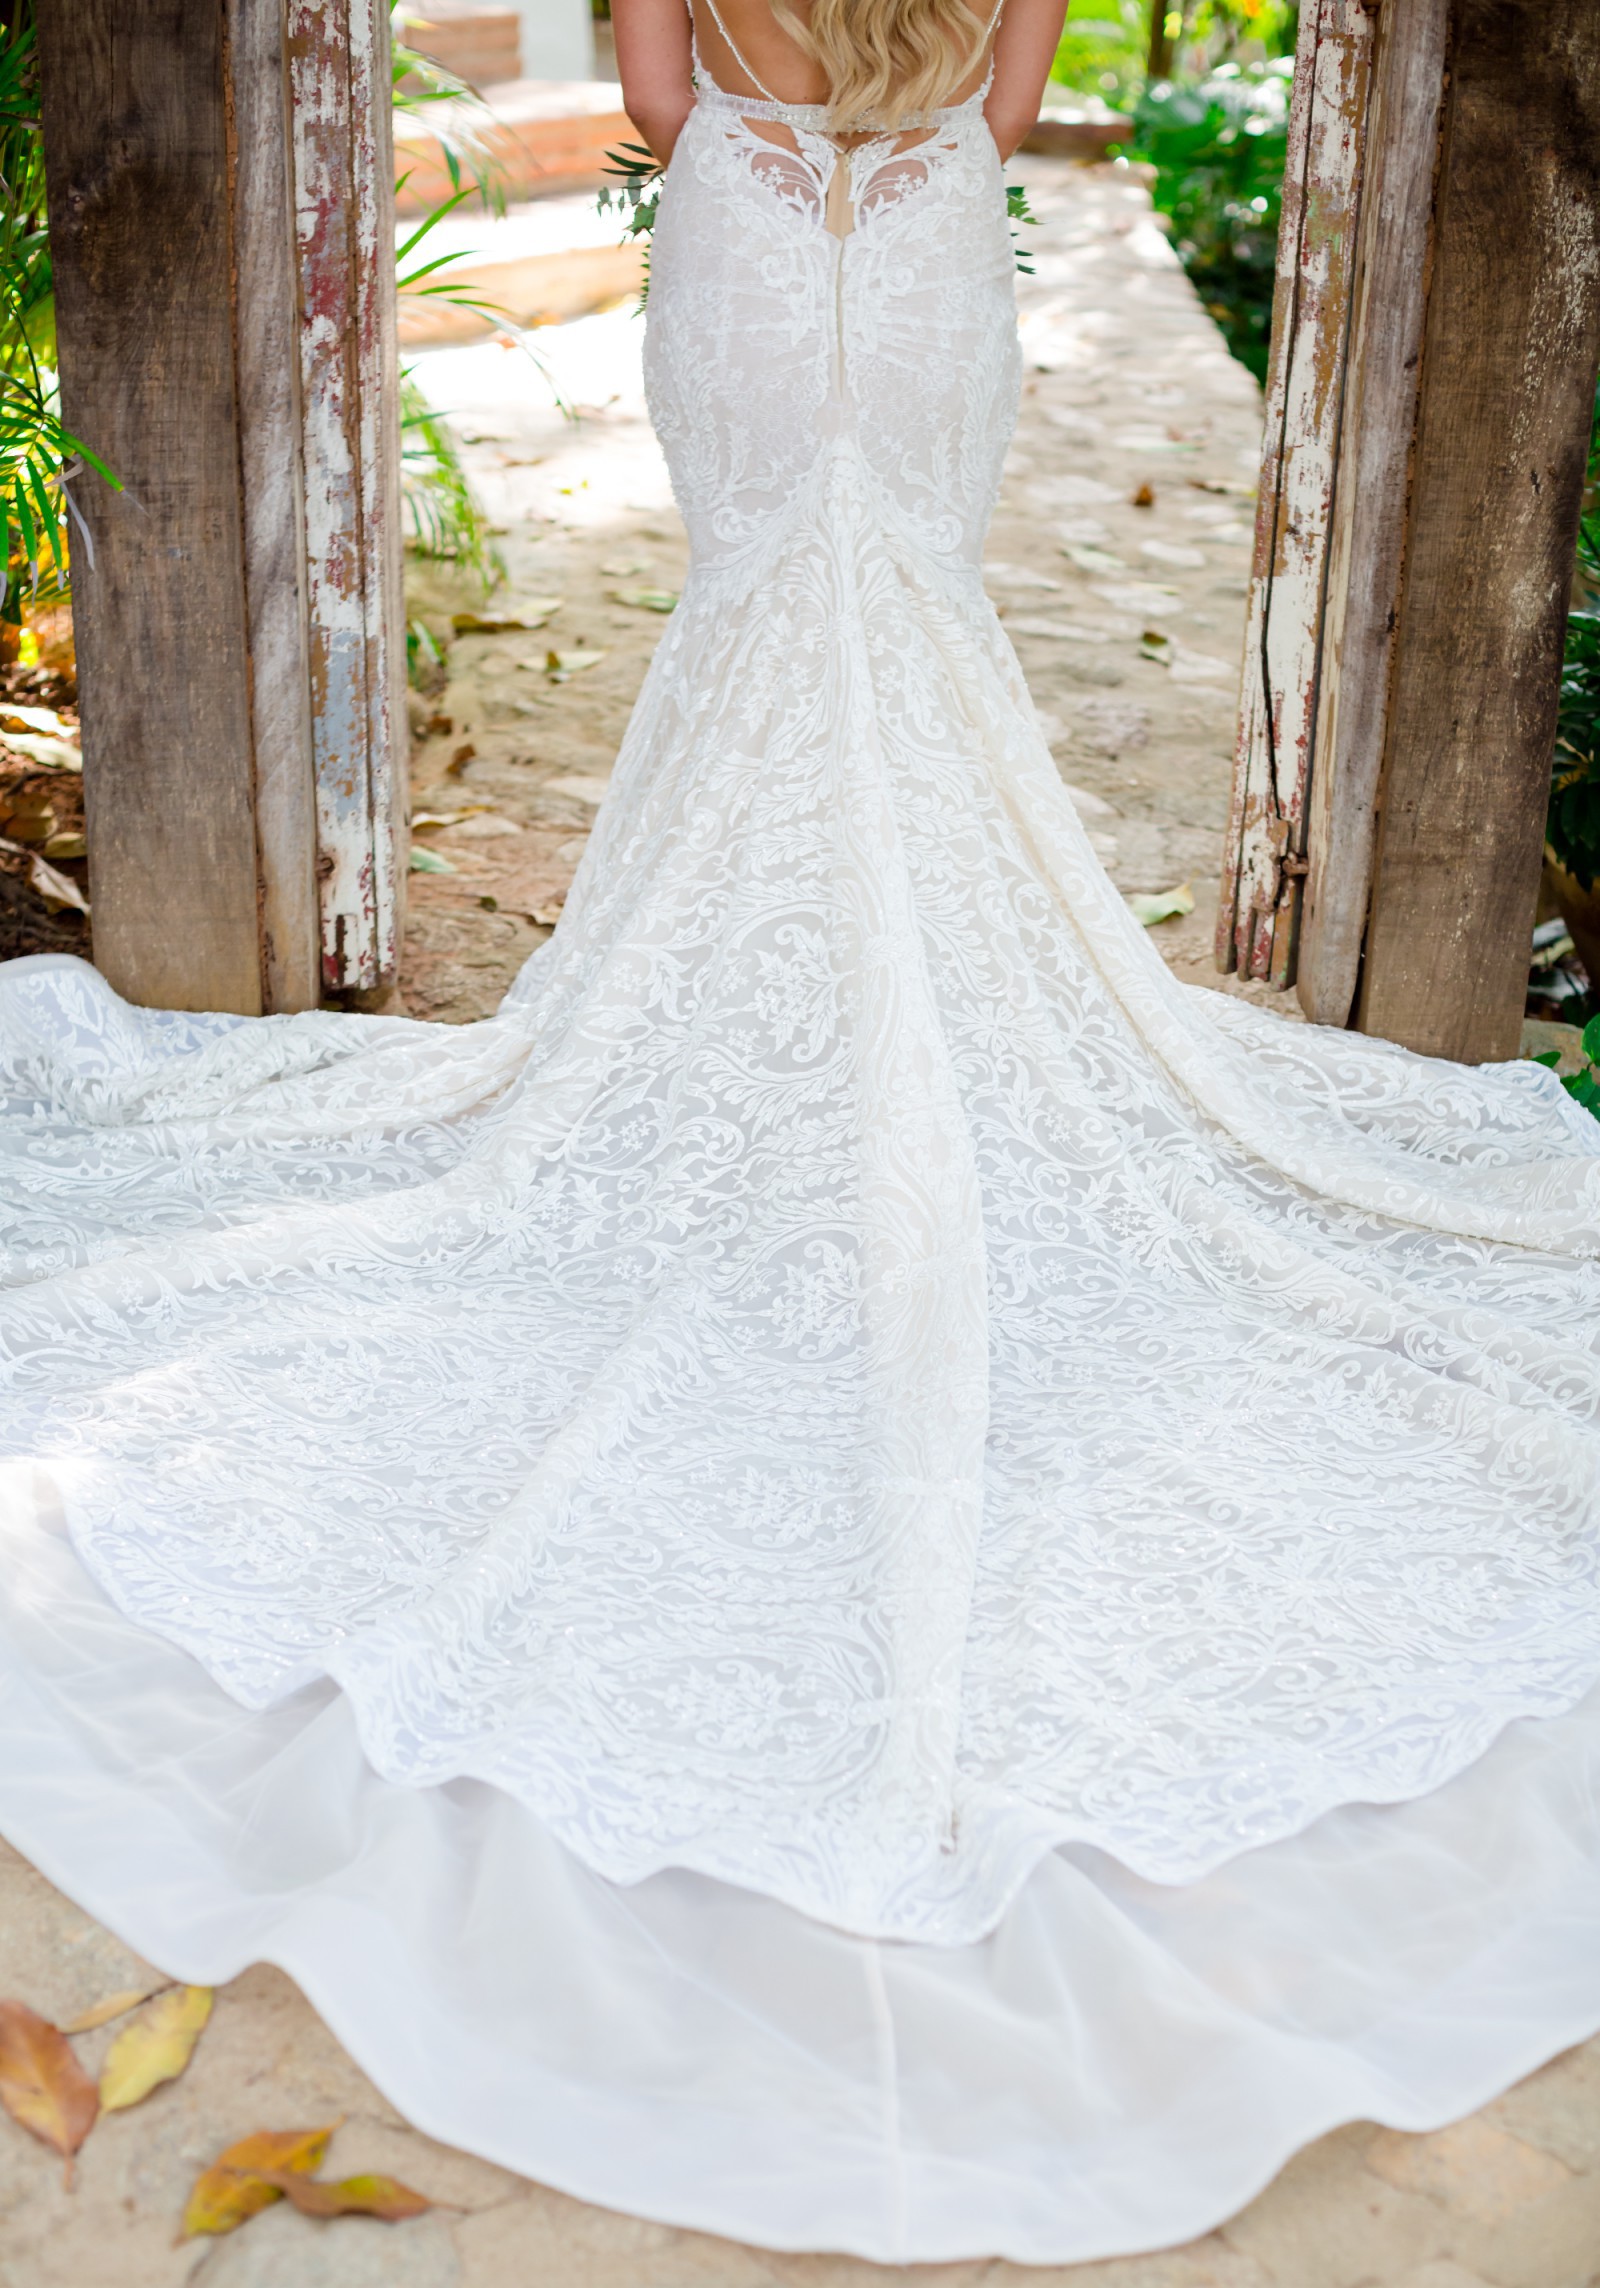 floral cotton dress